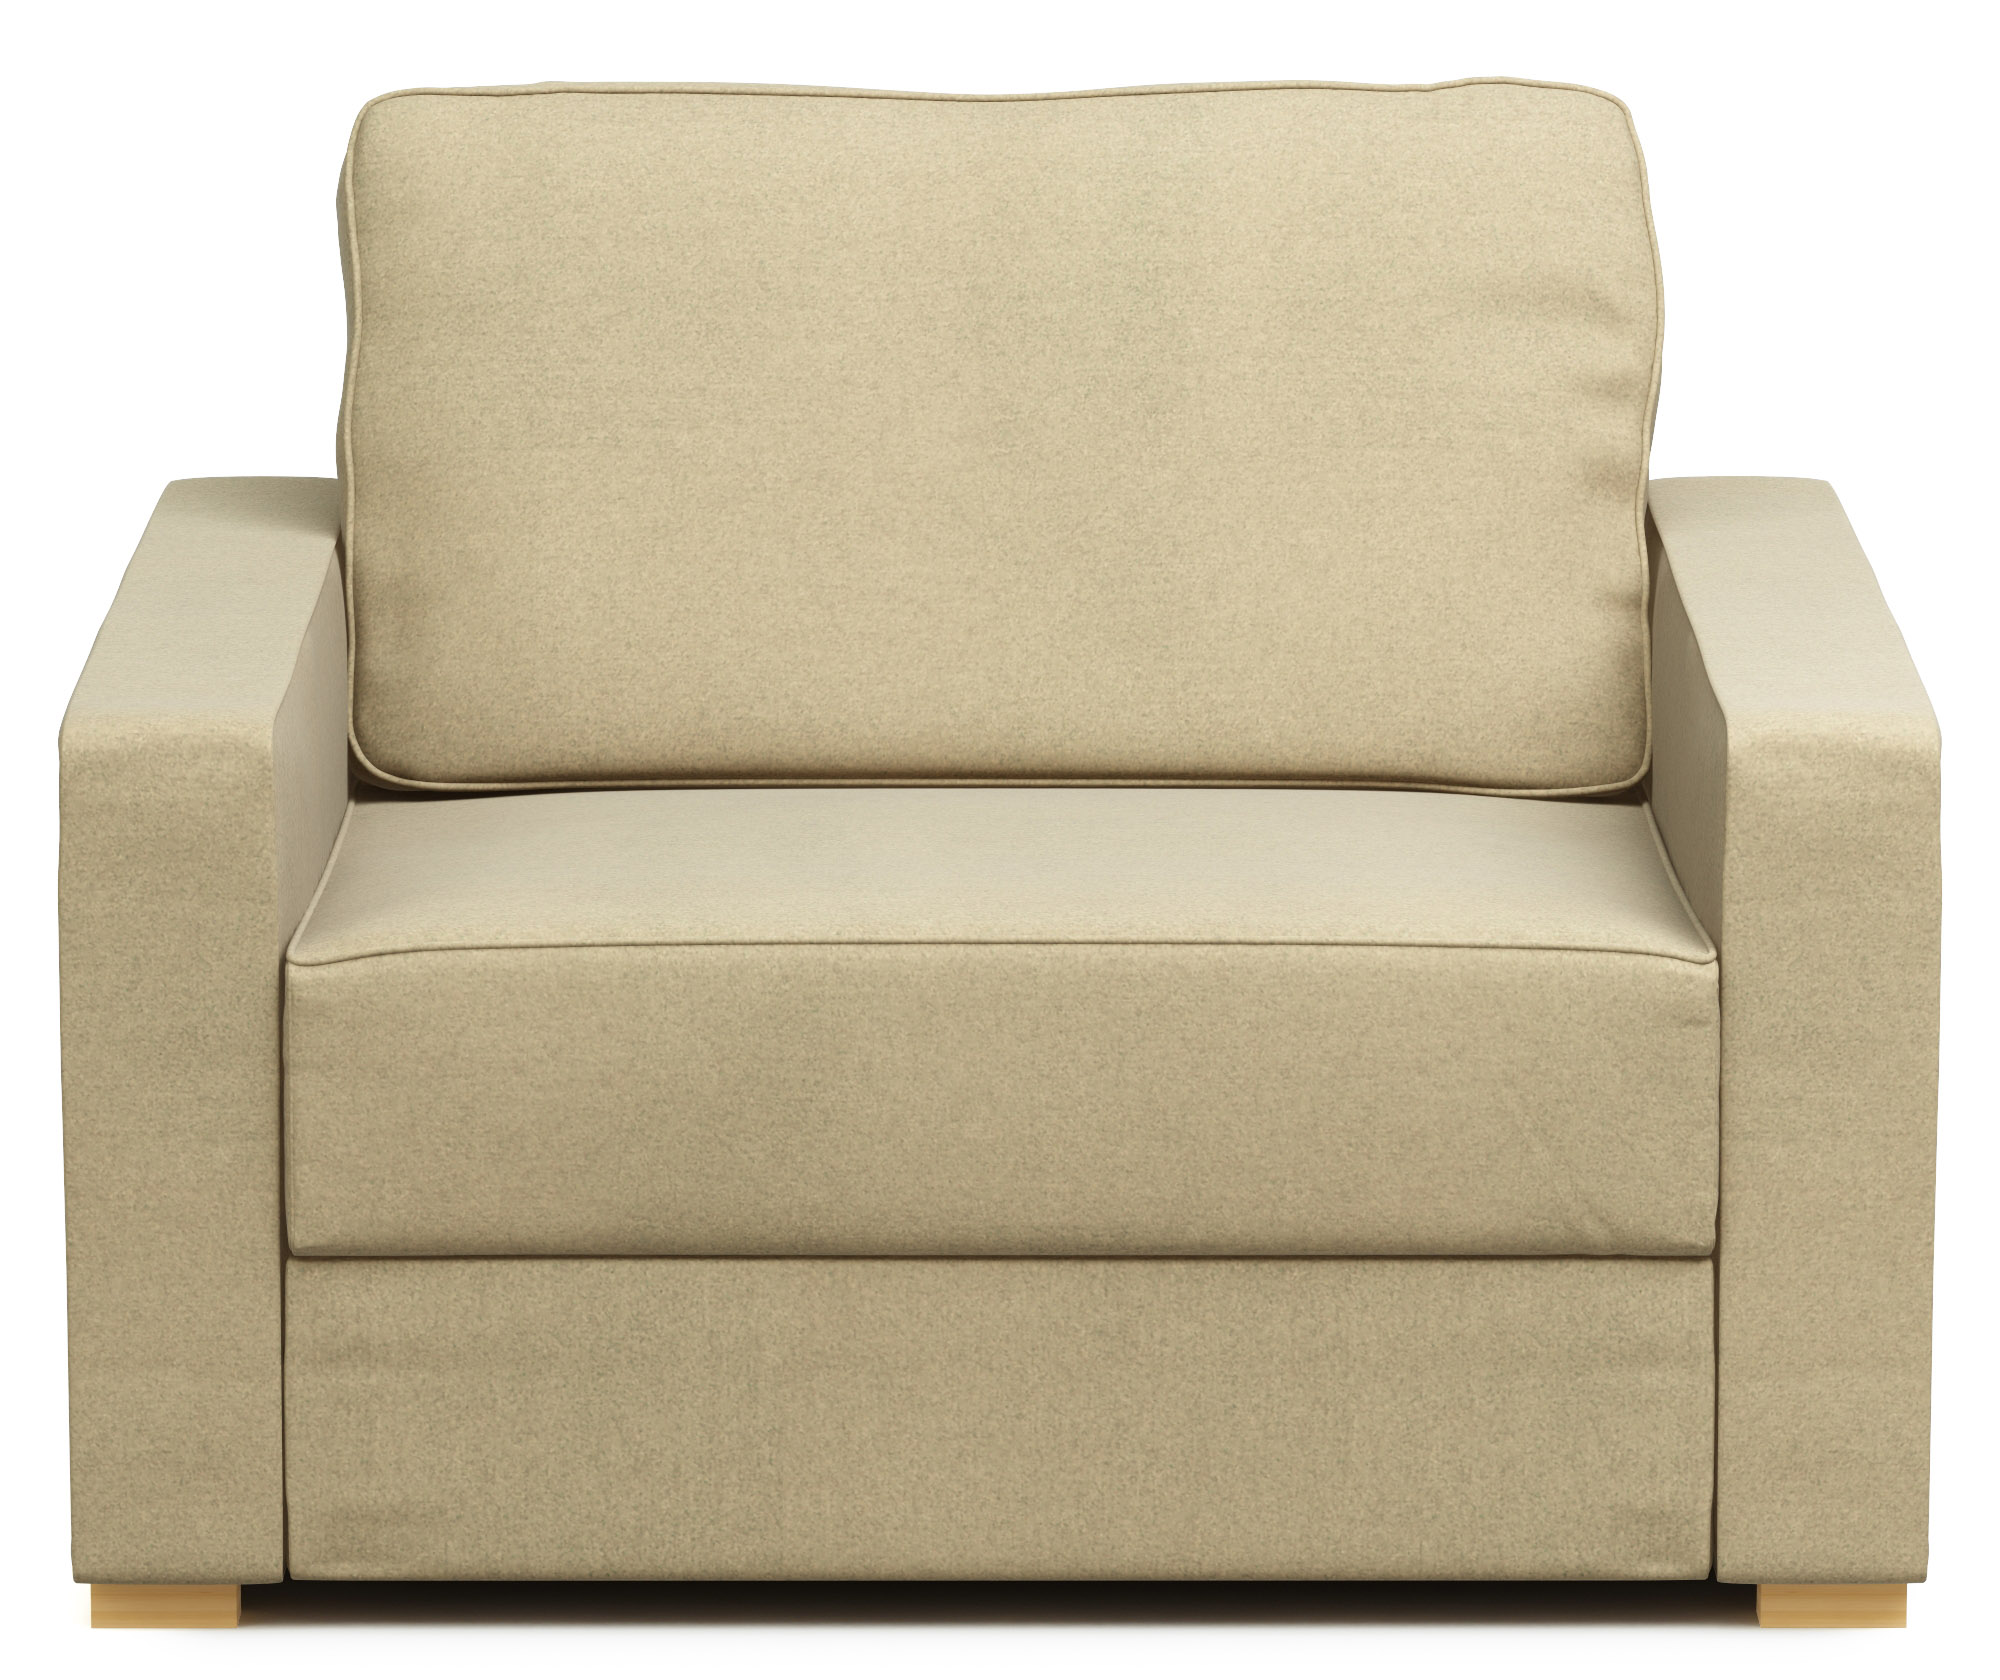 sofa design inspiration